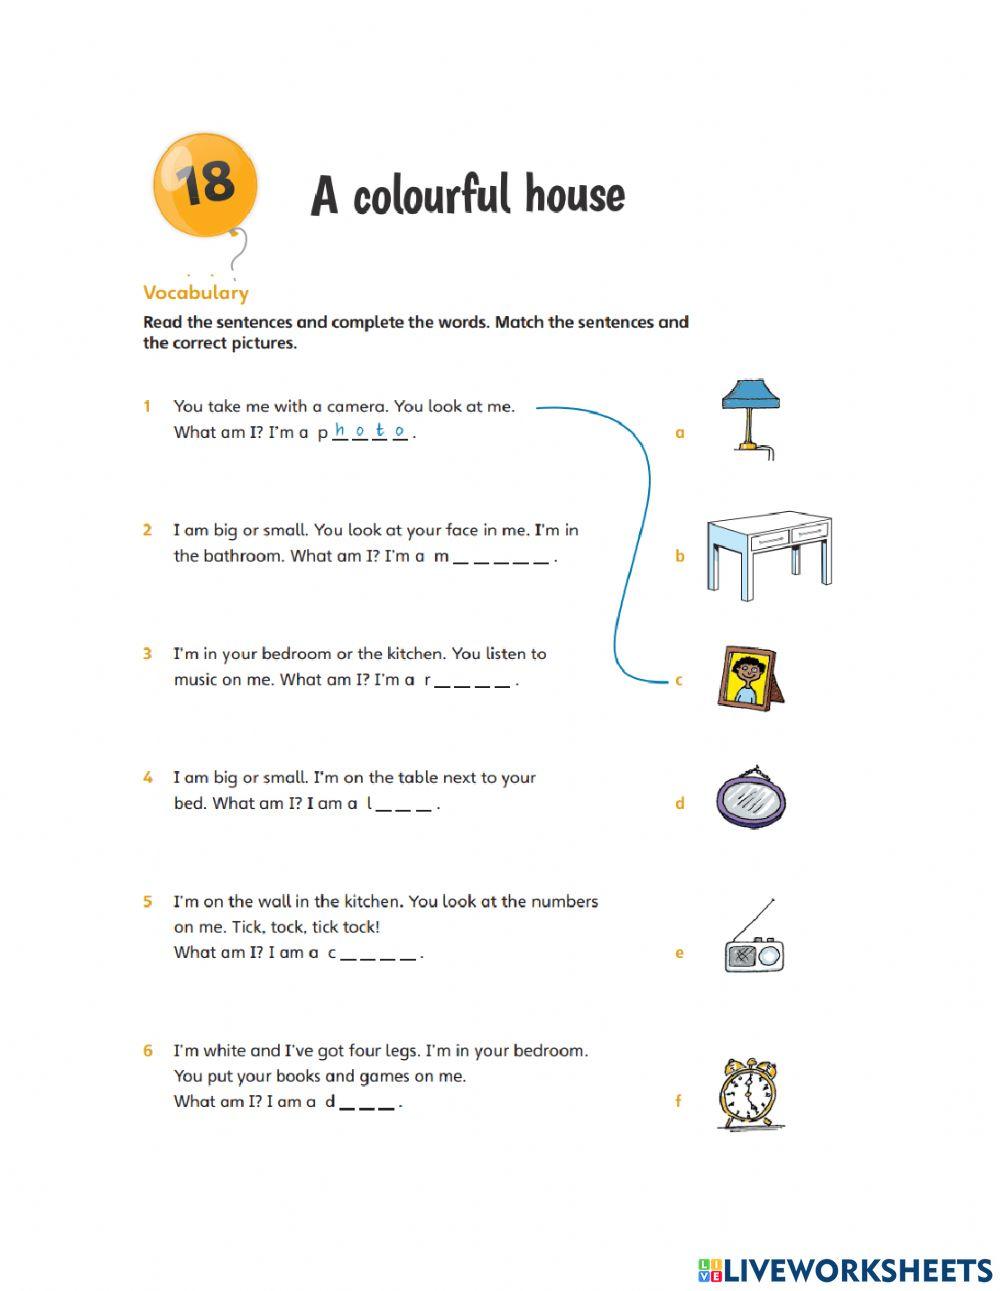 Unit 18 : A colorful house